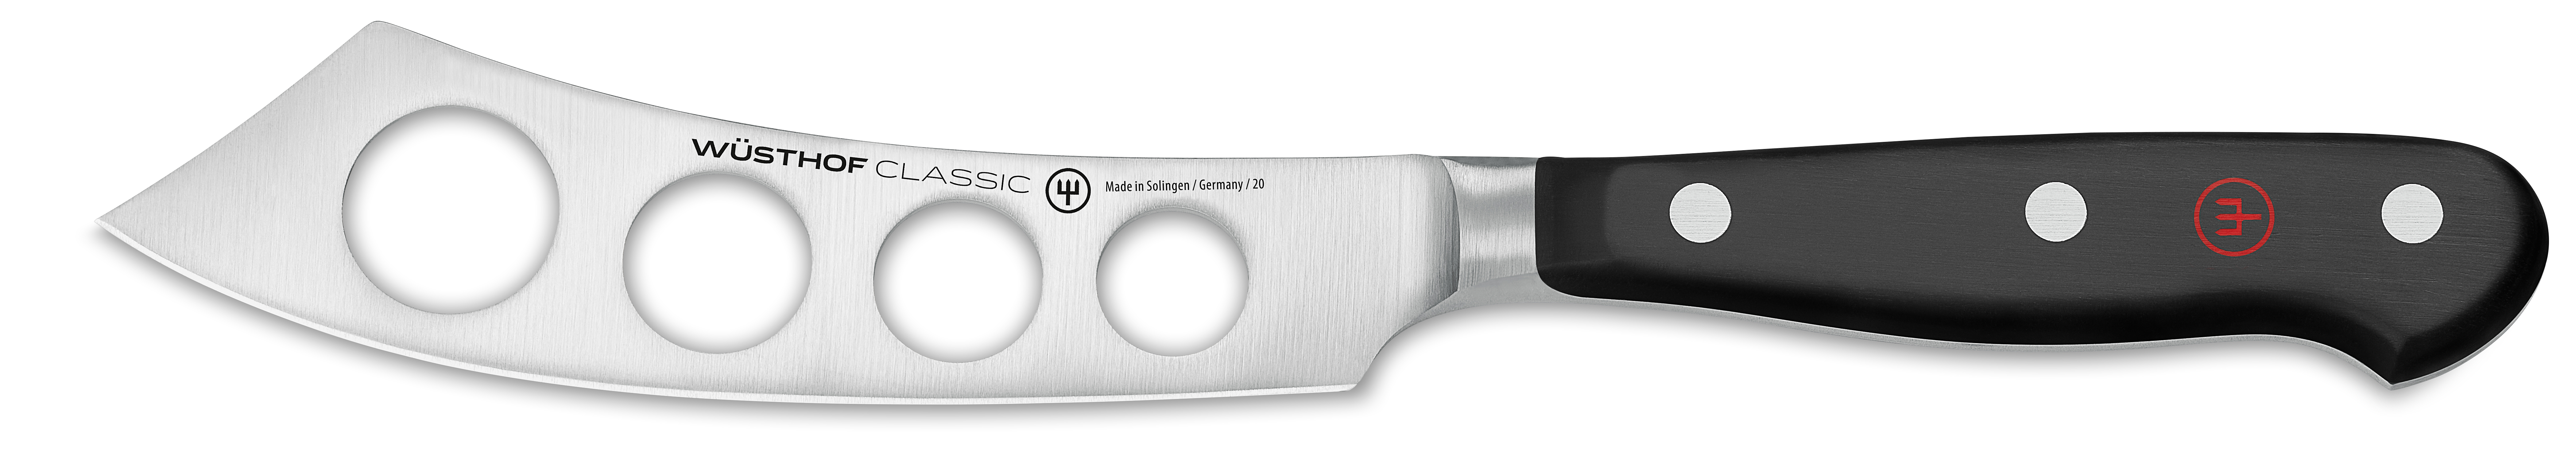 Käsemesser / Cheese knife